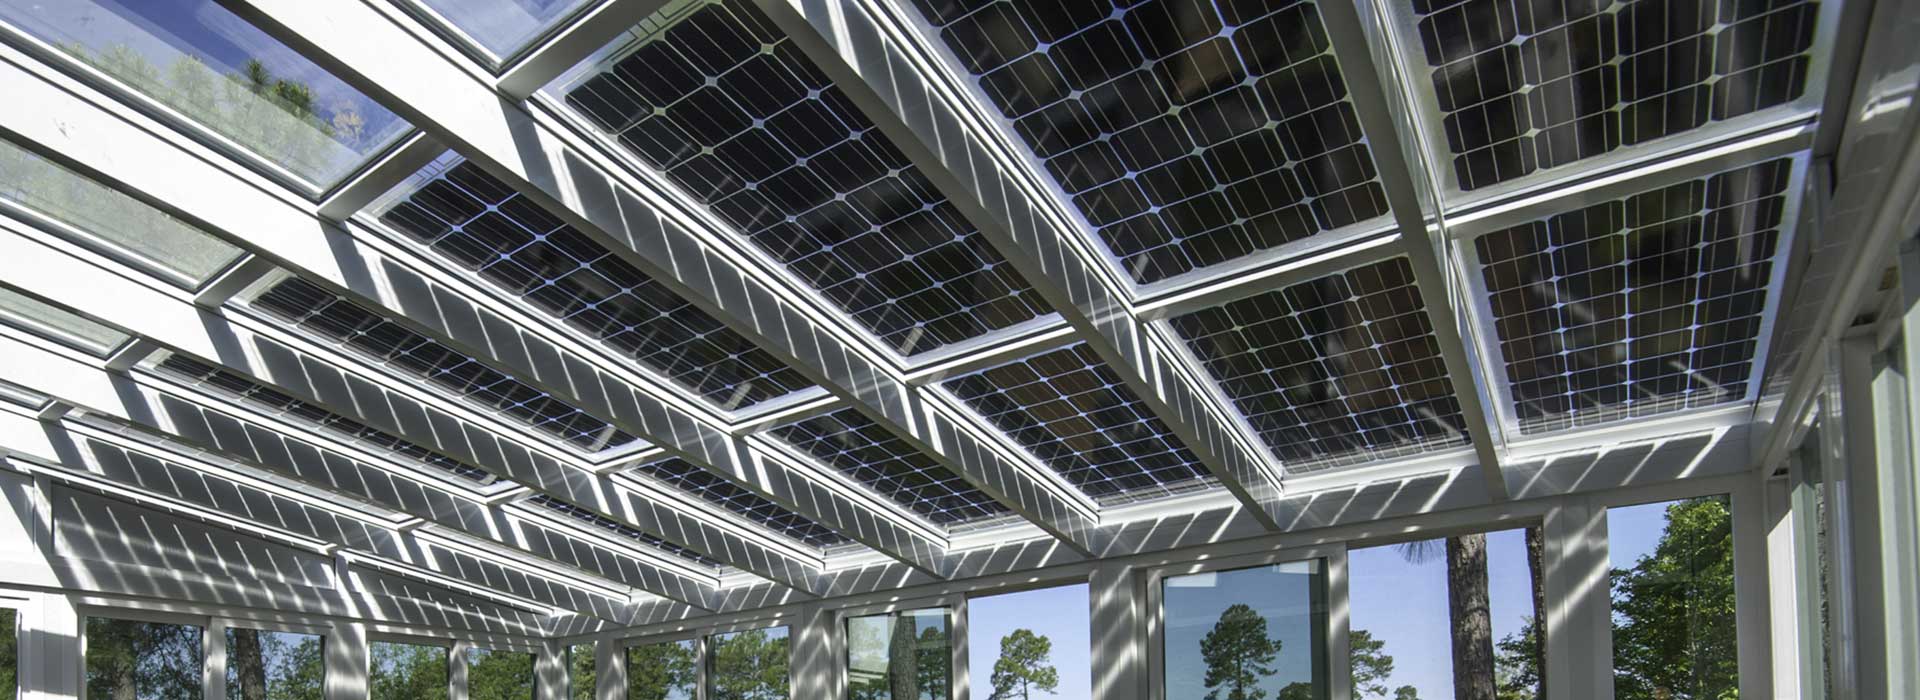 Alumínium tetőfedés fotovoltaikus panelekkel